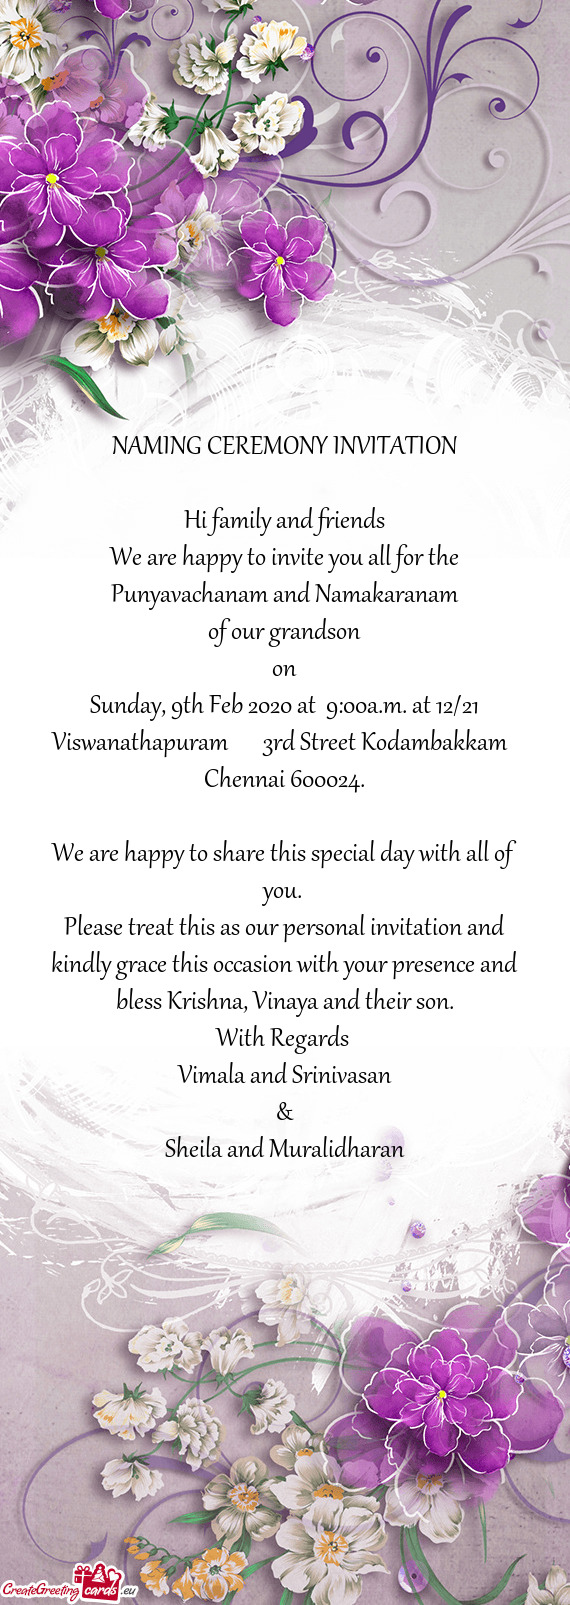 Sunday, 9th Feb 2020 at 9:00a.m. at 12/21 Viswanathapuram  3rd Street Kodambakkam Chennai 60